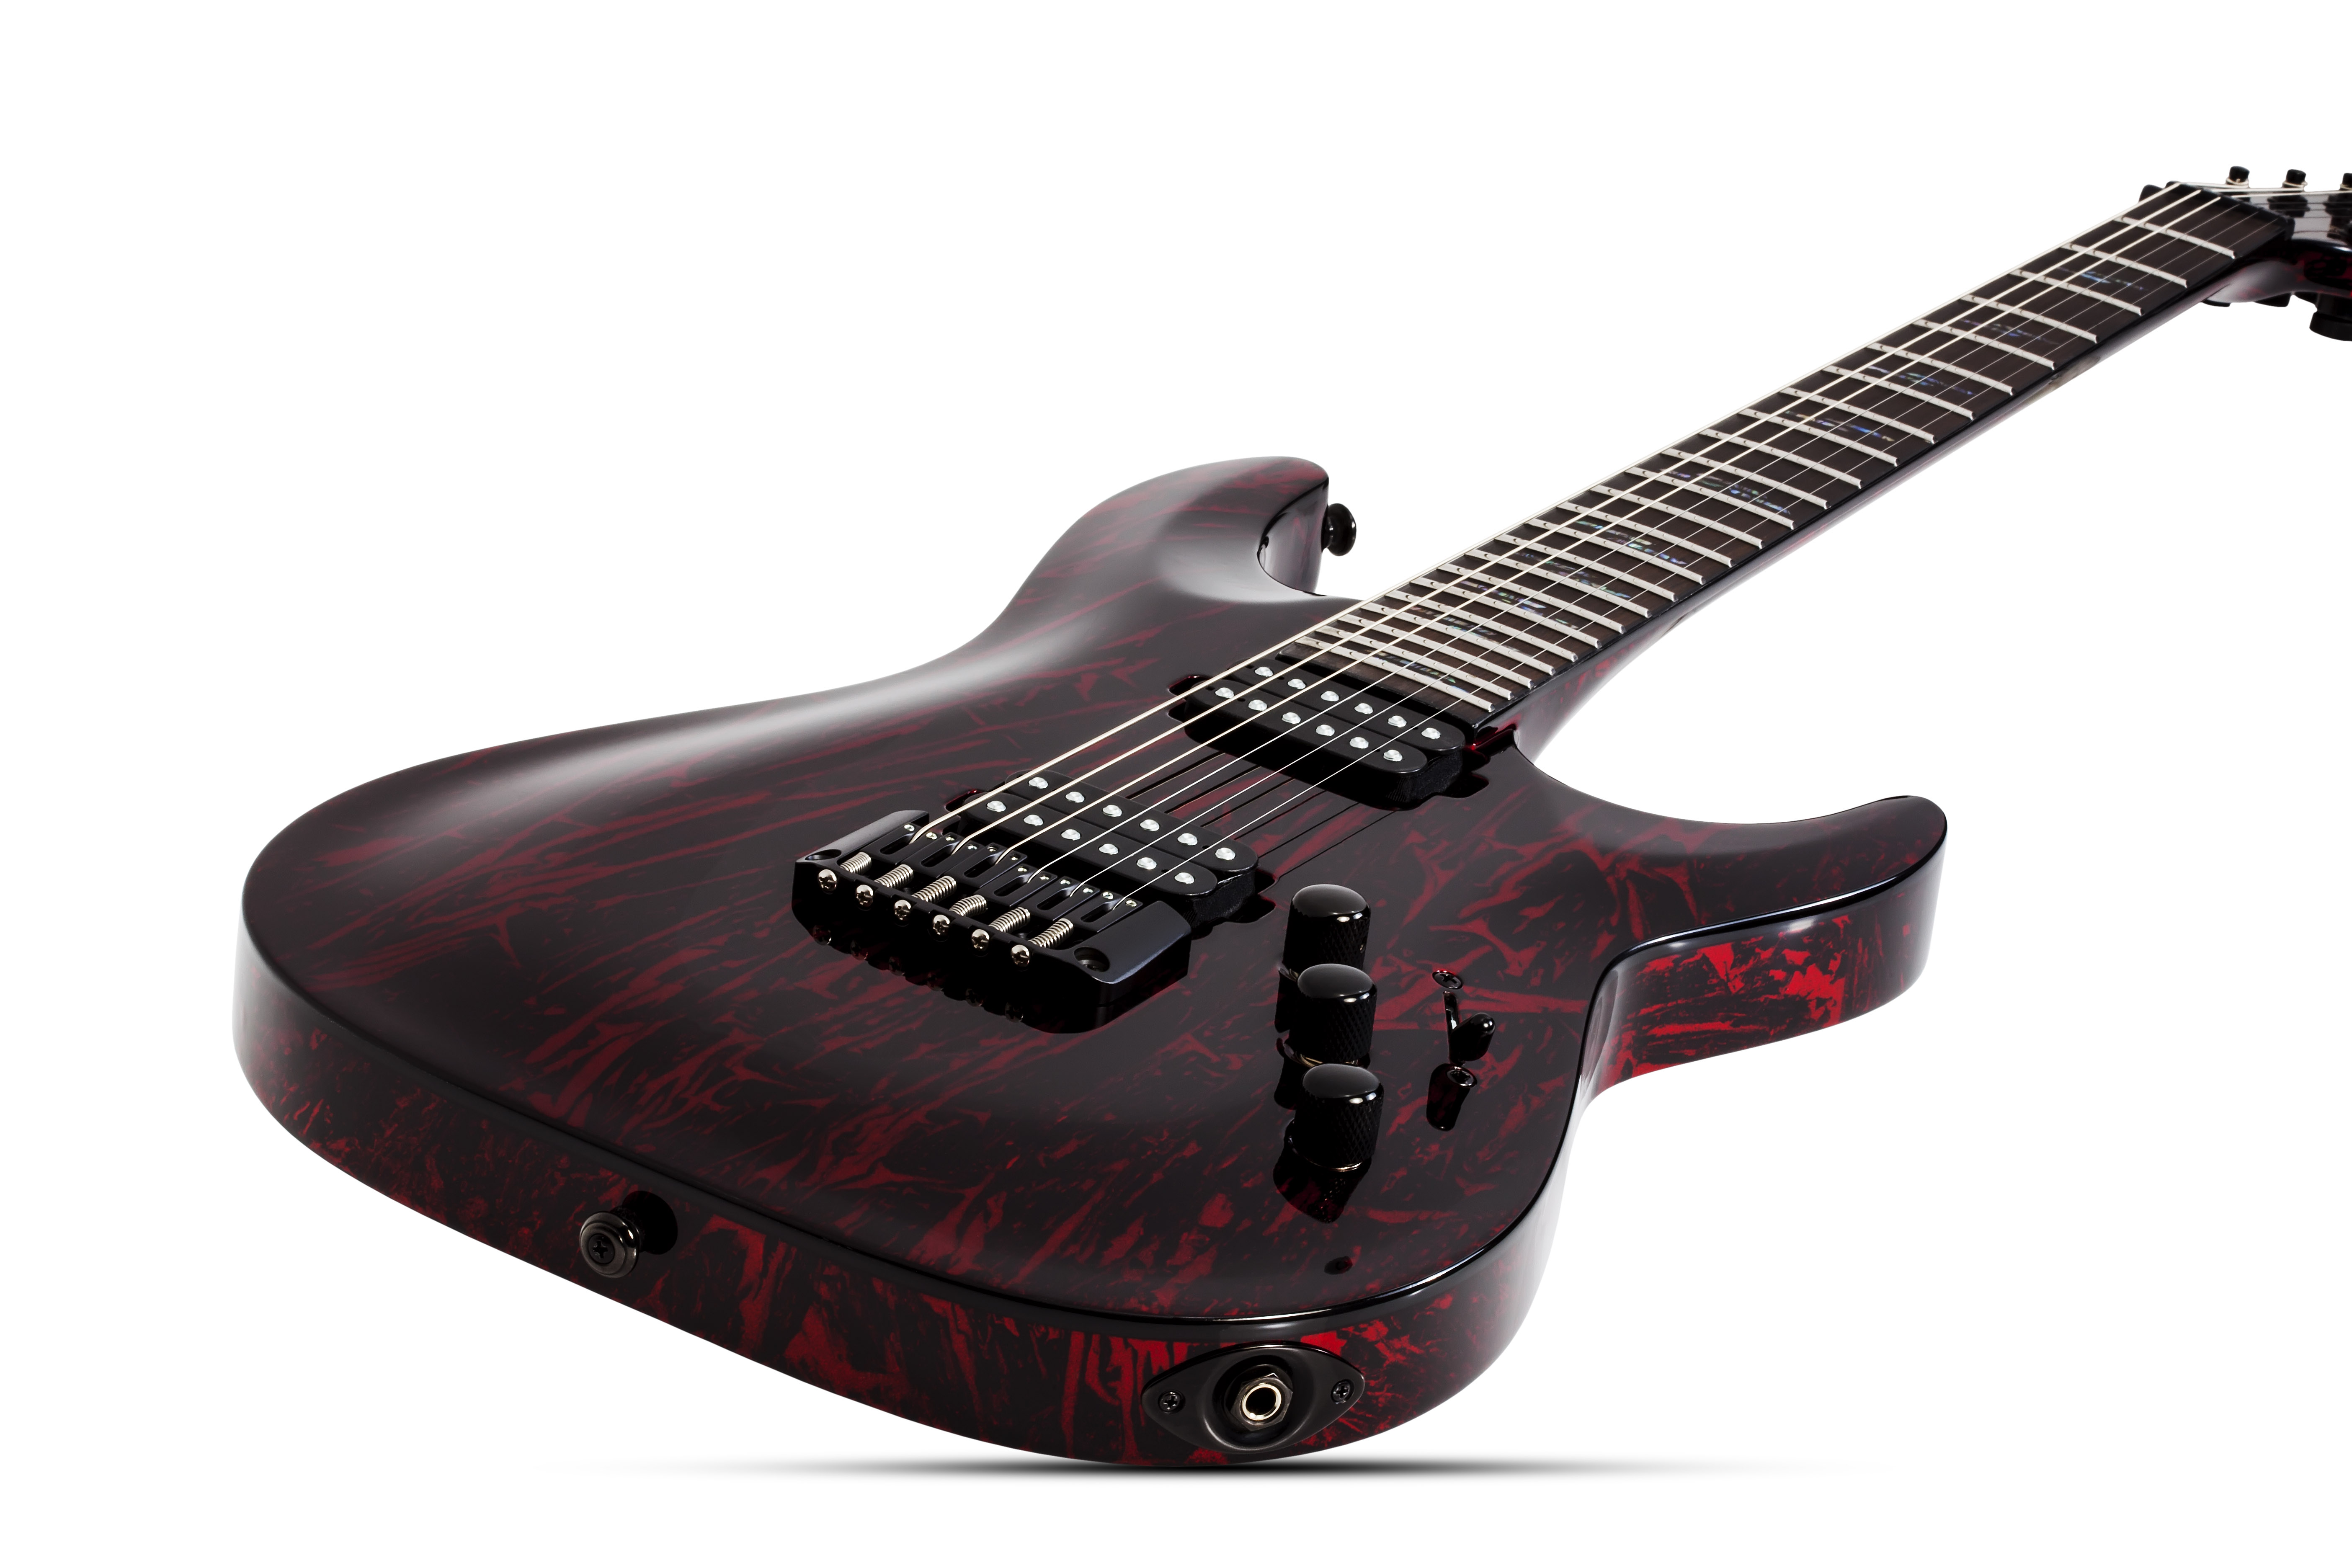 Dekbed Registratie spijsvertering Solid body elektrische gitaar Schecter C-1 Silver Mountain - blood moon rood